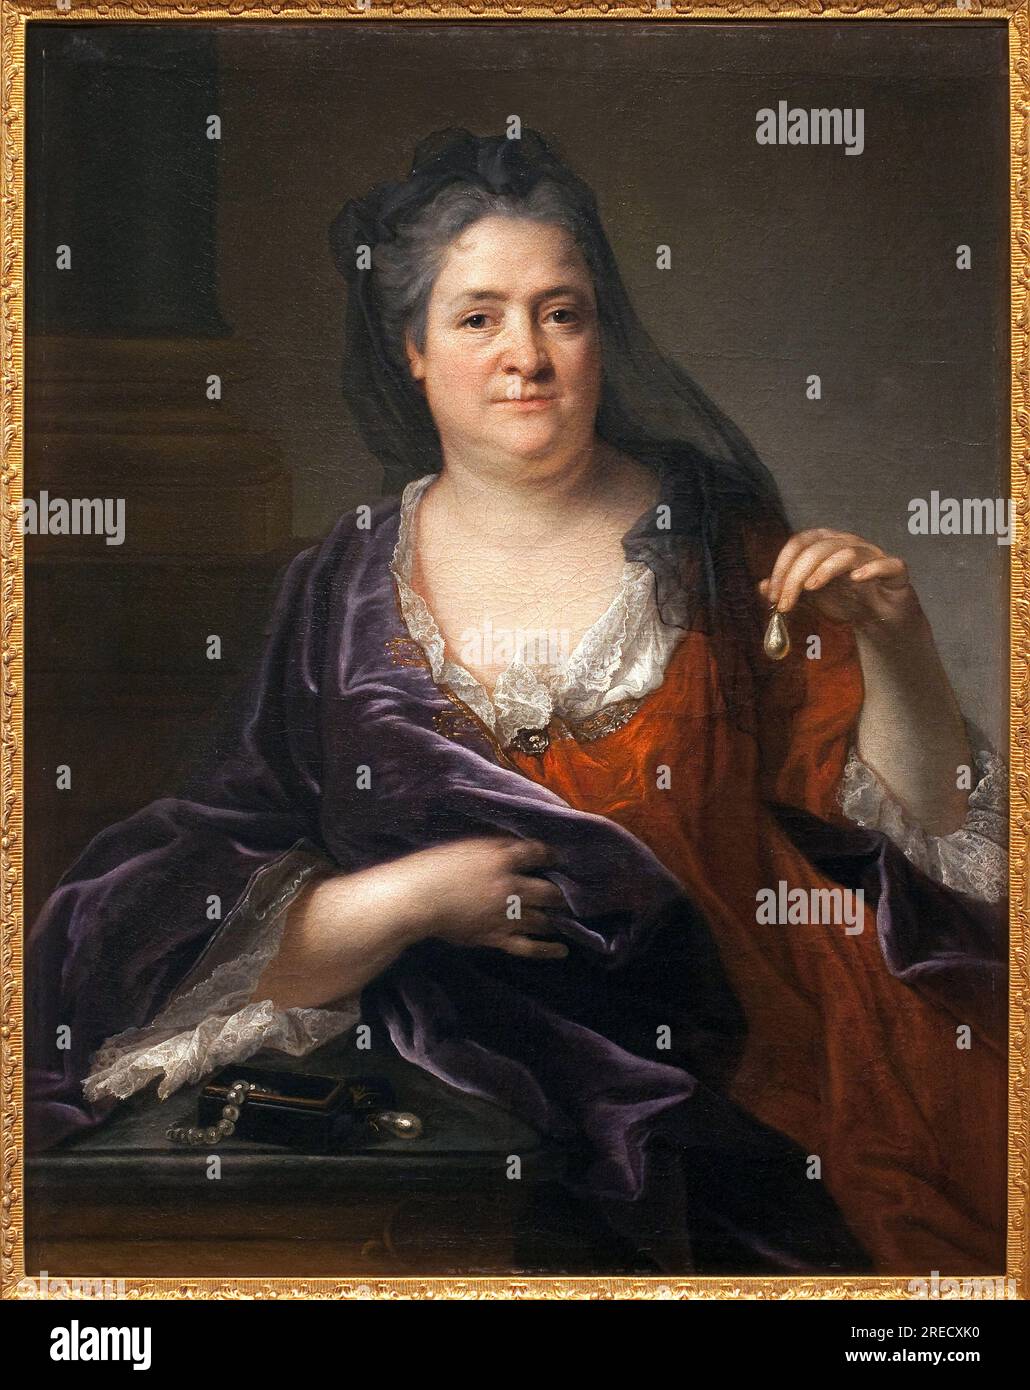 La duchesse d'Orleans ou la Palatine Elisabeth-Charlotte ou Elisabeth Charlotte de Baviere)(1657-1722) Peinture attribuee a Andre Bouys (1656-1740), huile sur toile, vers 1700. Musee des Beaux Arts de Niort. Stock Photo